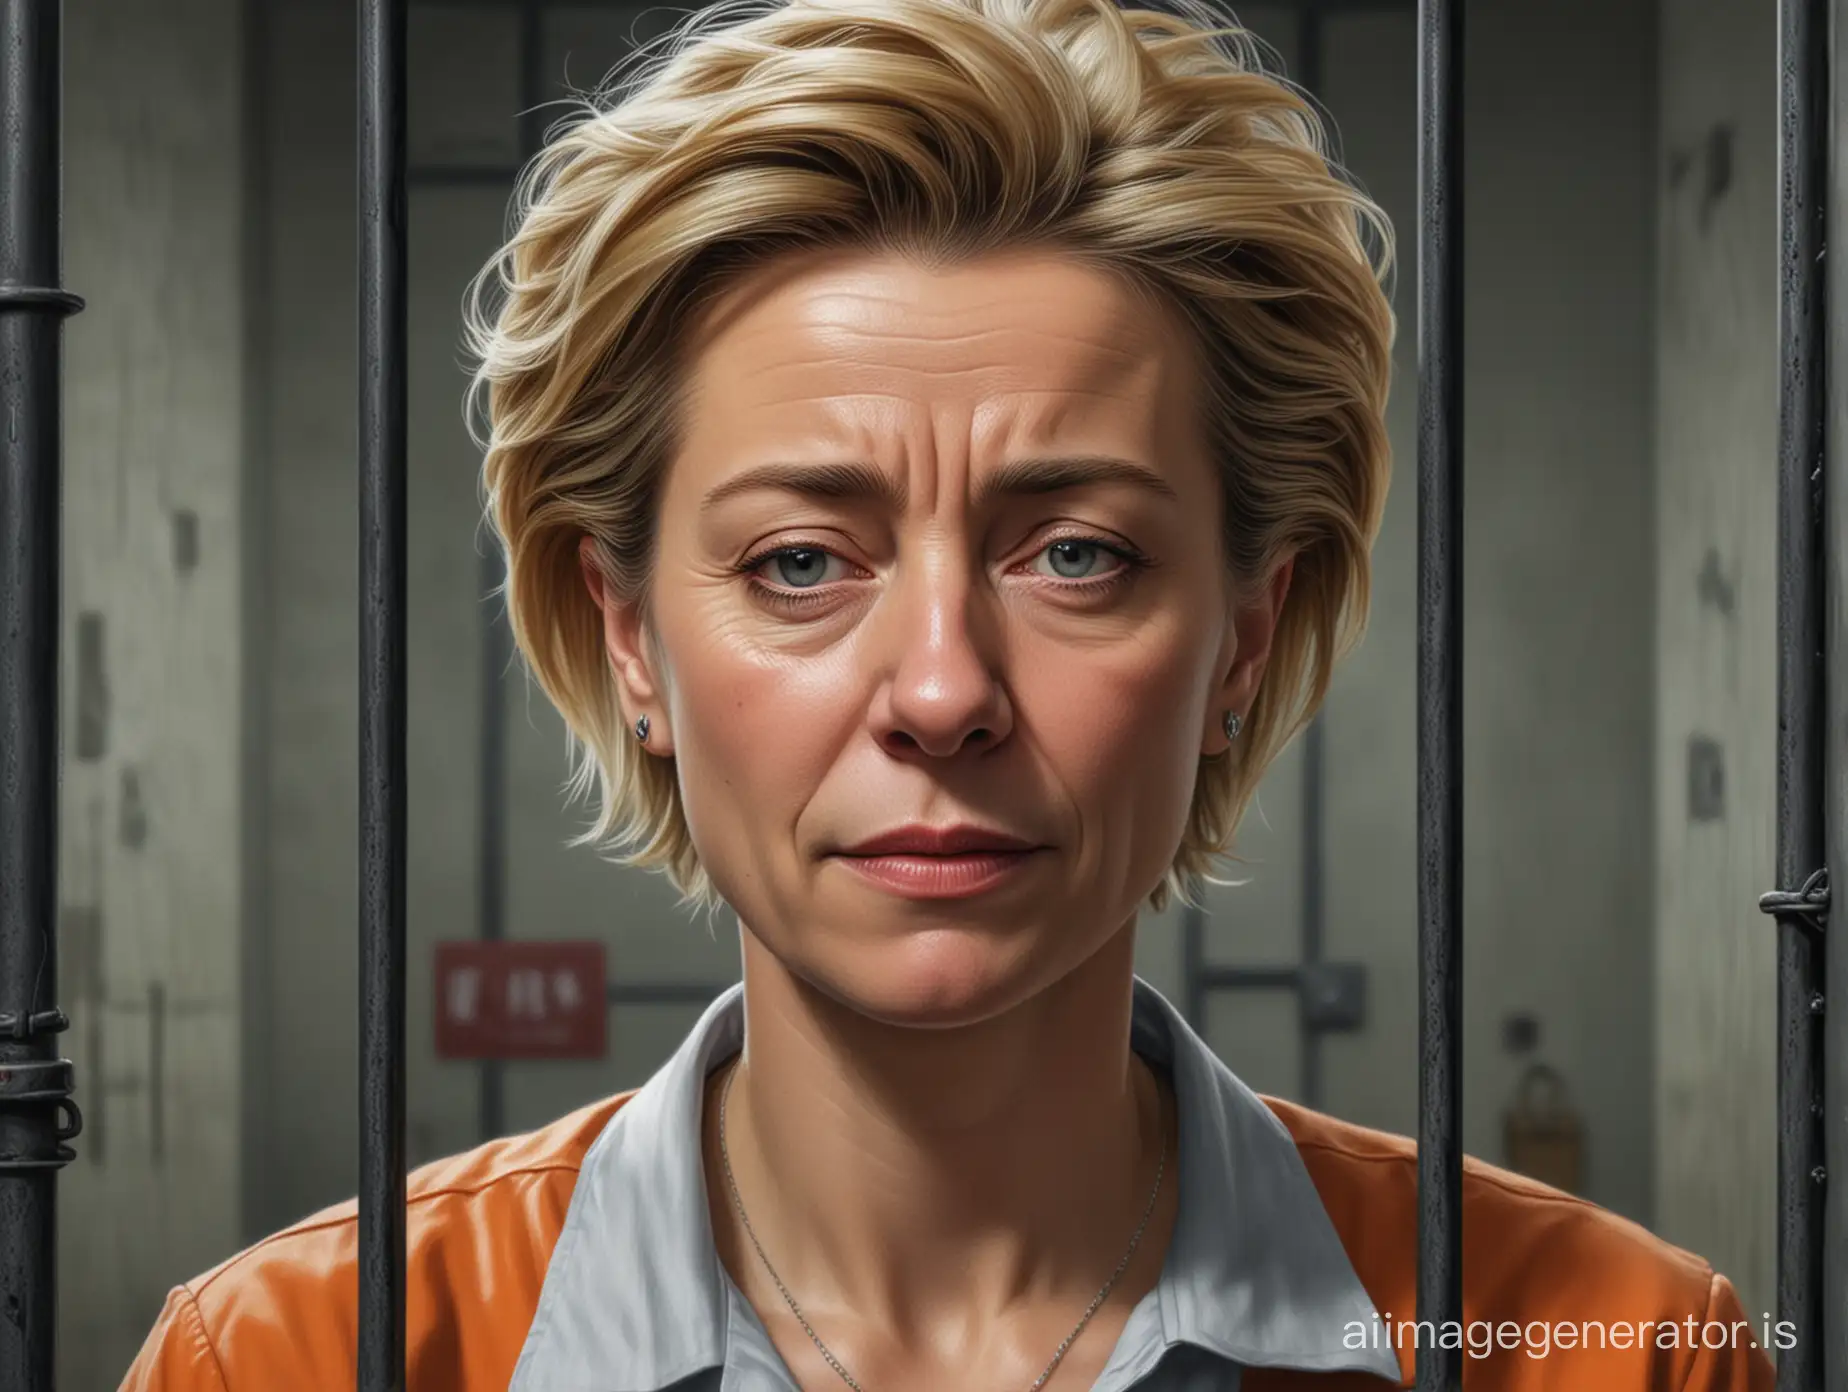 Sad Ursula von der Leyen in jail, realism, realistic, photorealism, detailed, hyperrealistic